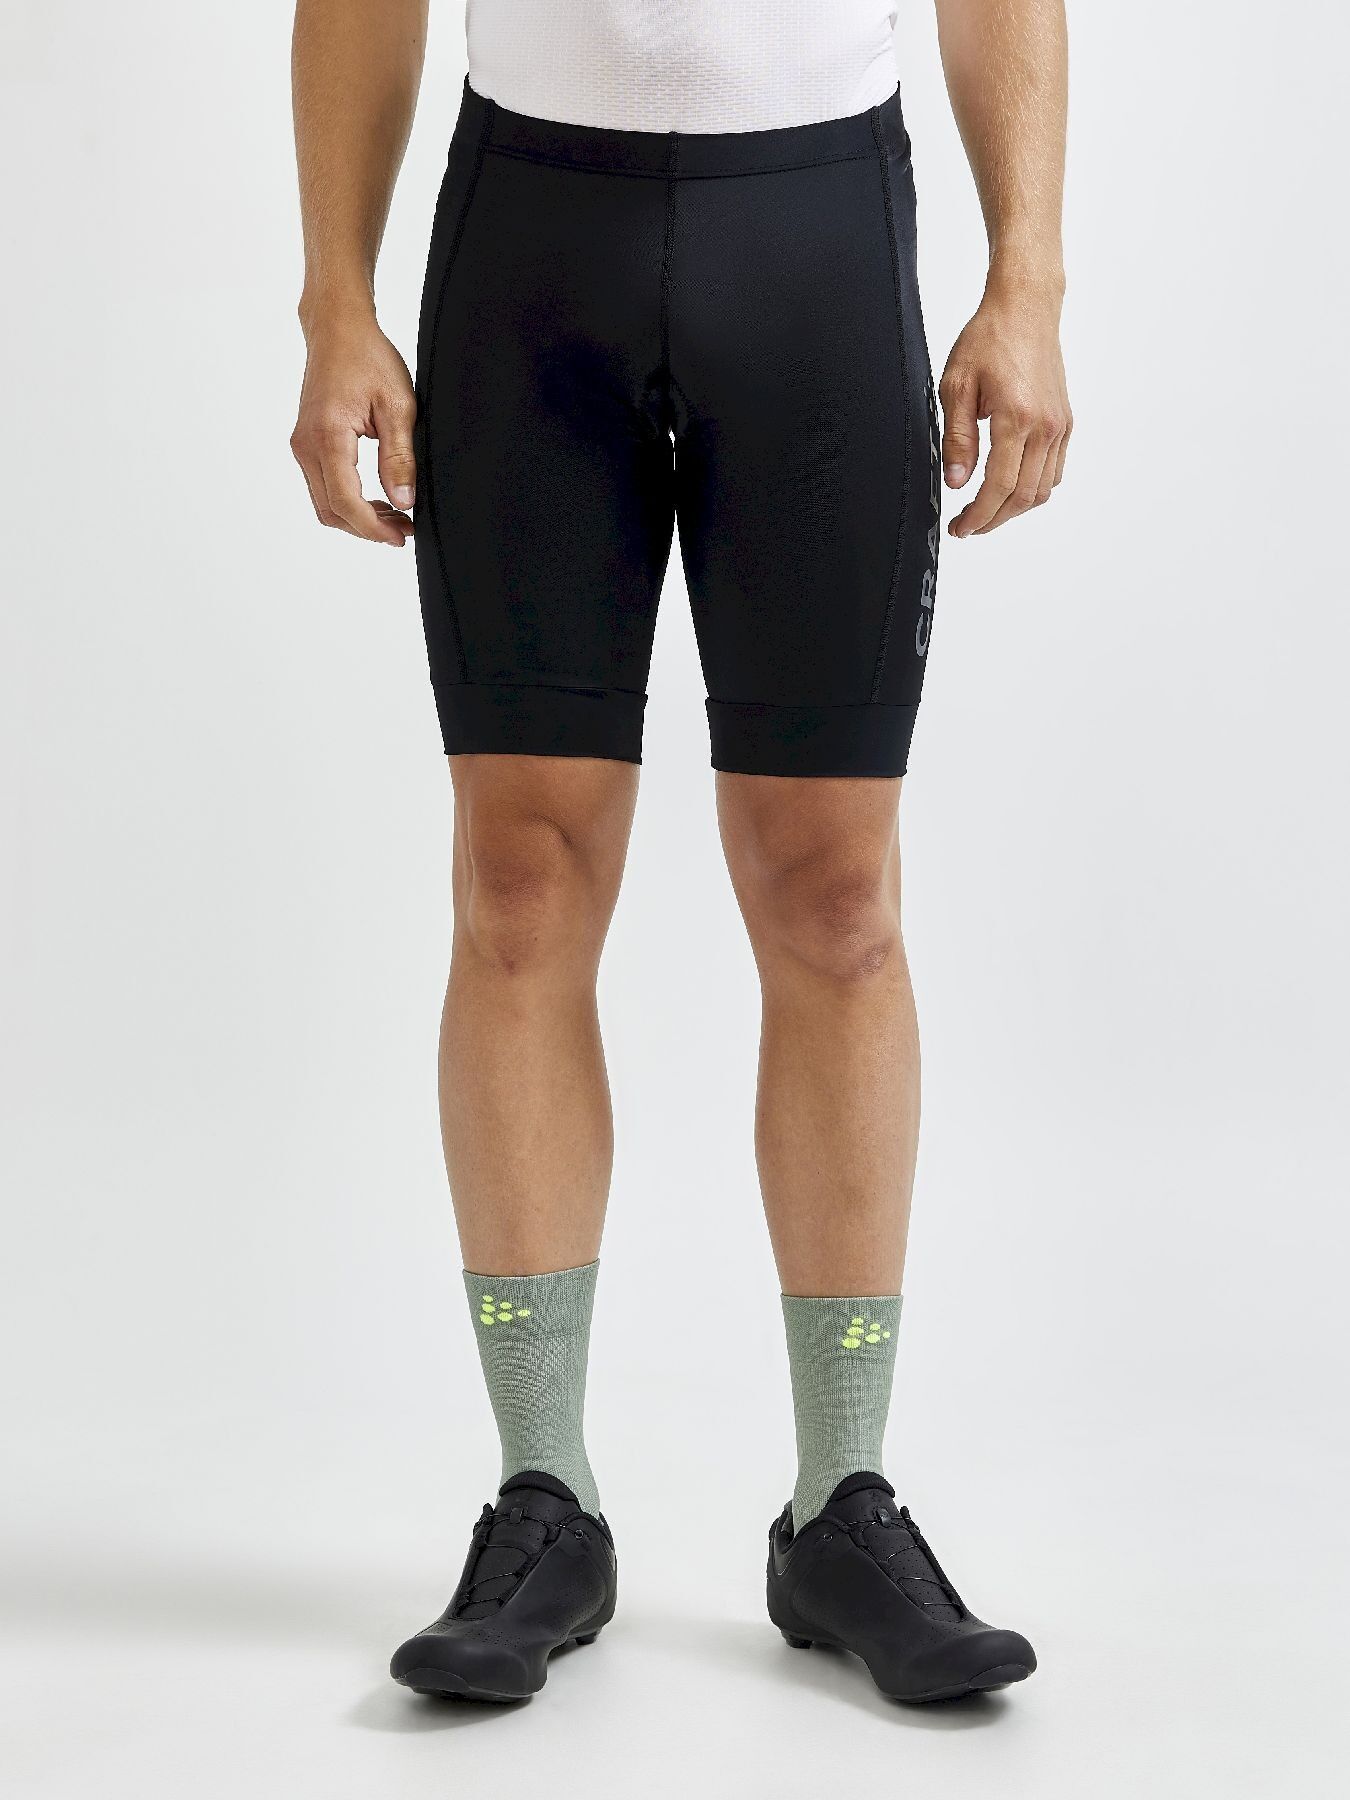 Craft Core Endurance Shorts - Fahrradhose - Herren